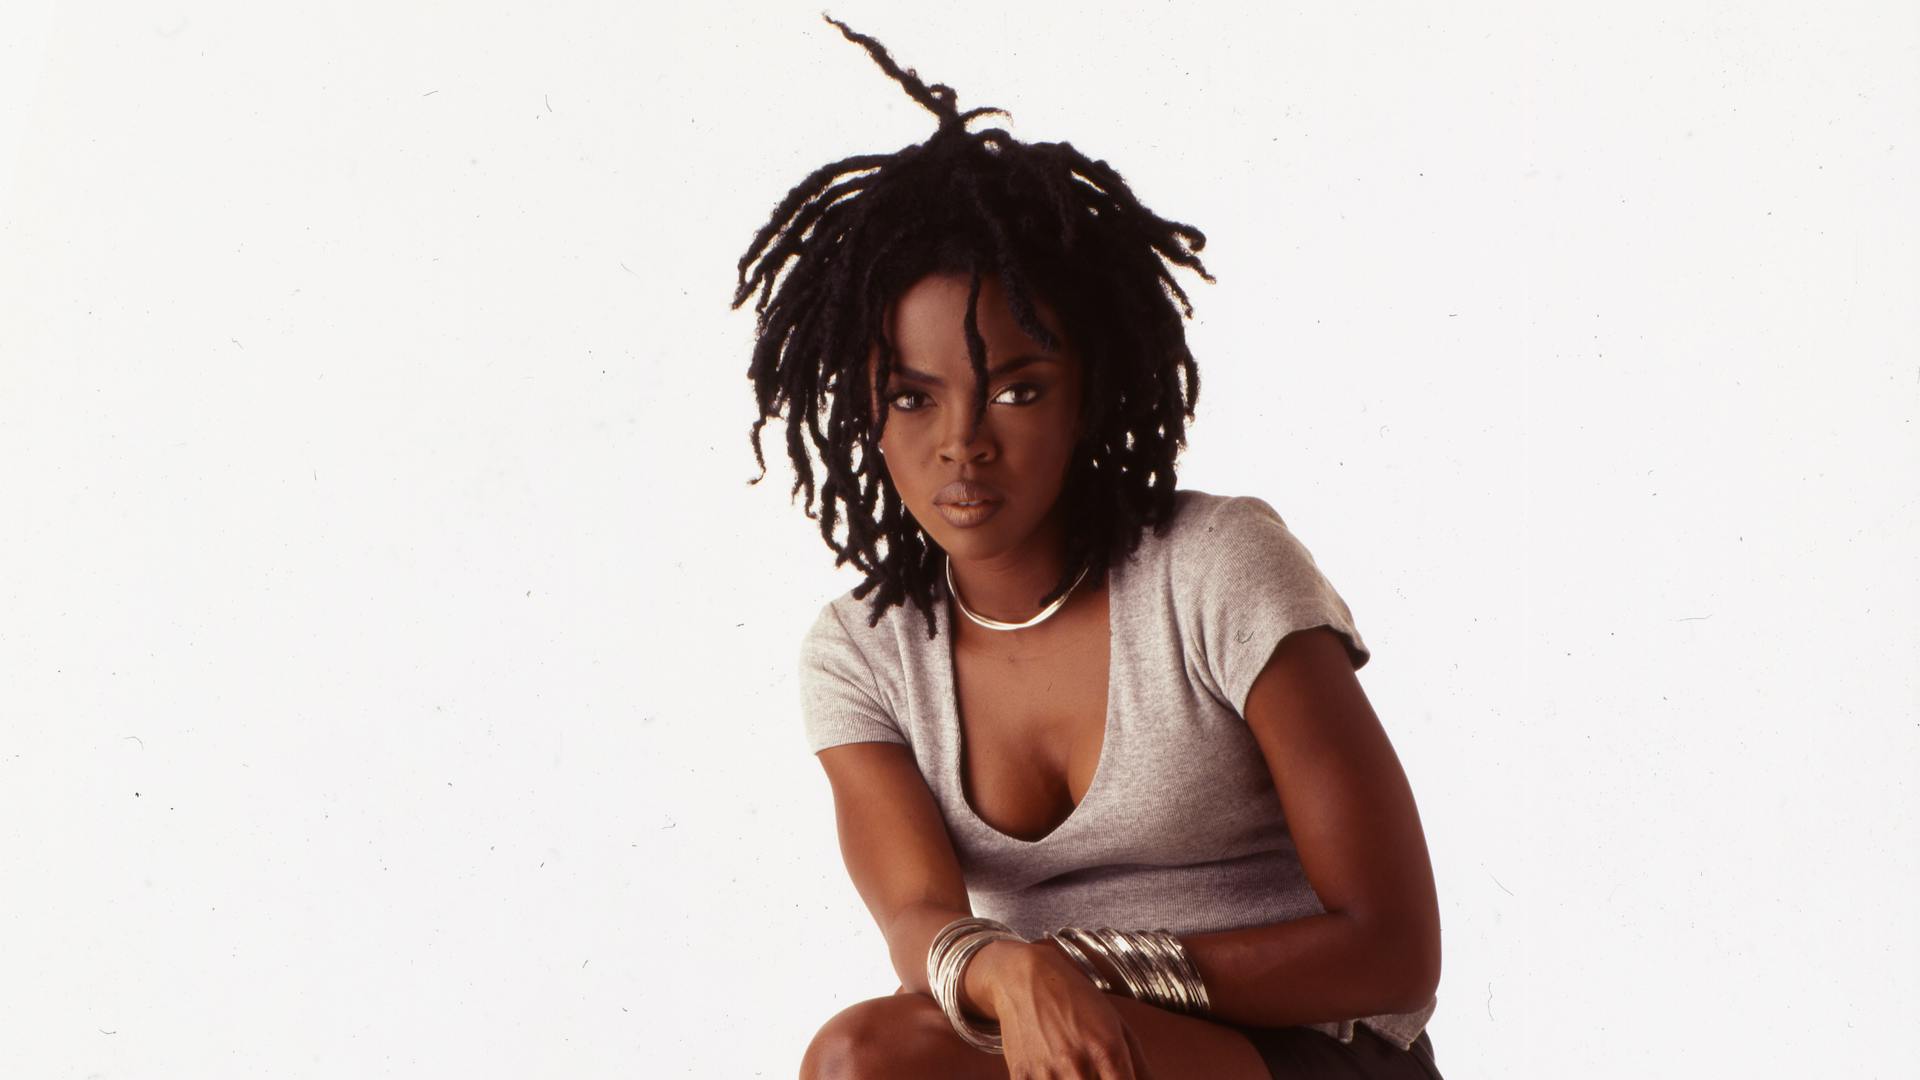 Portrait of American pop and rhythm & blues musician Lauryn Hill, 1998.